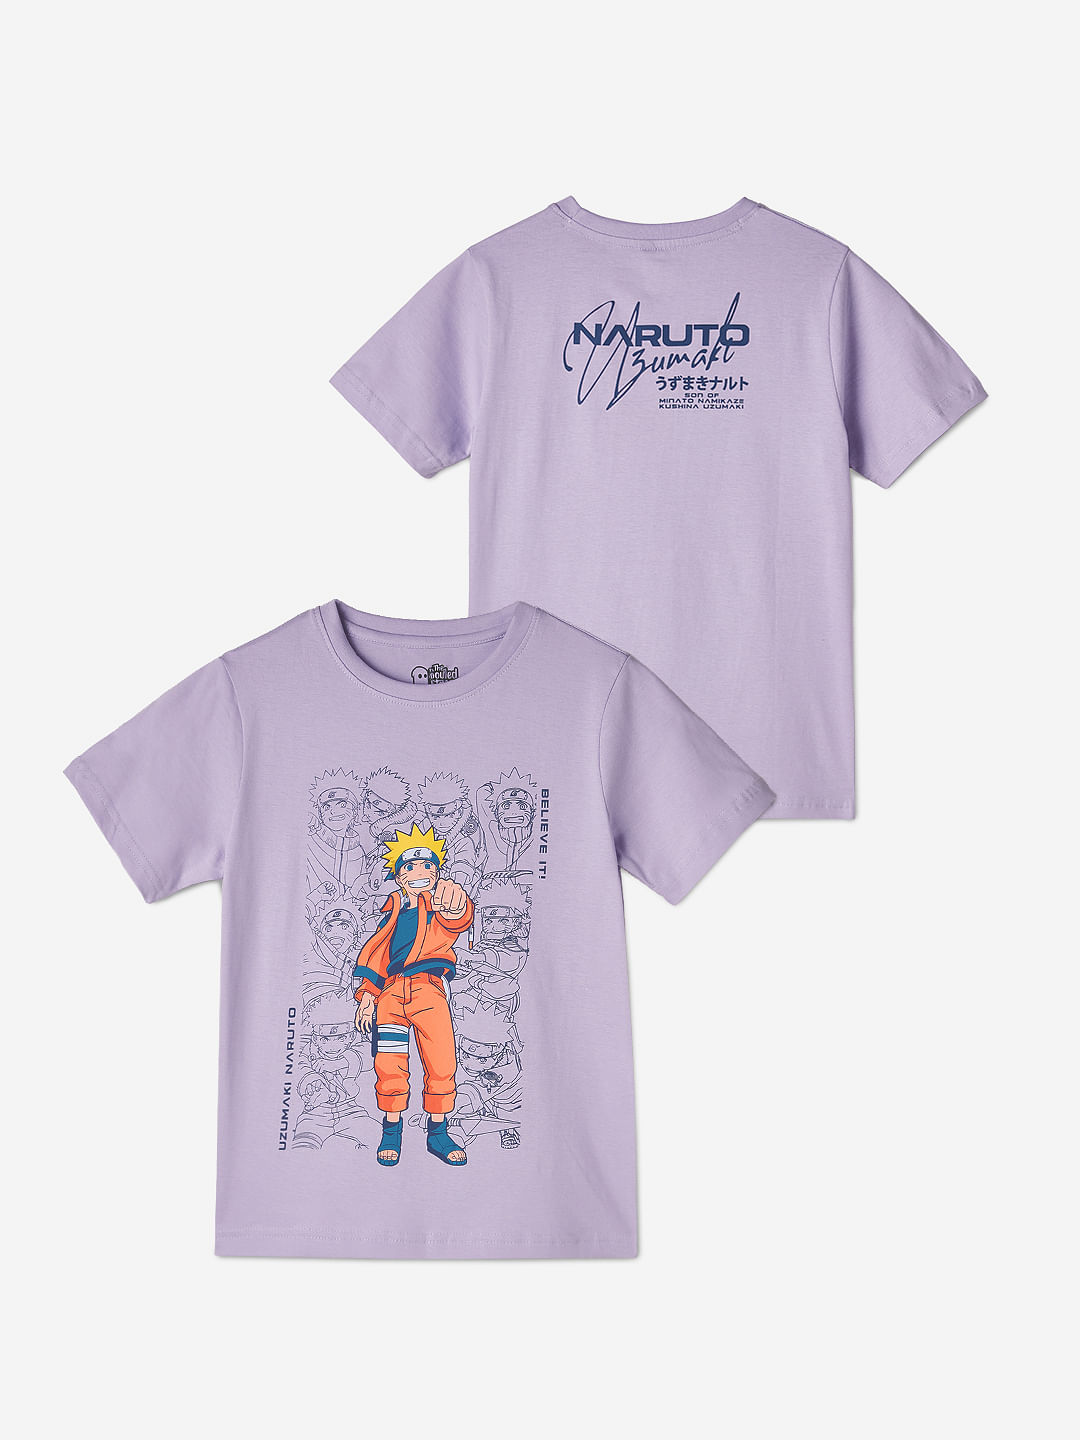 Naruto: Uzumaki Boys Cotton T-Shirts